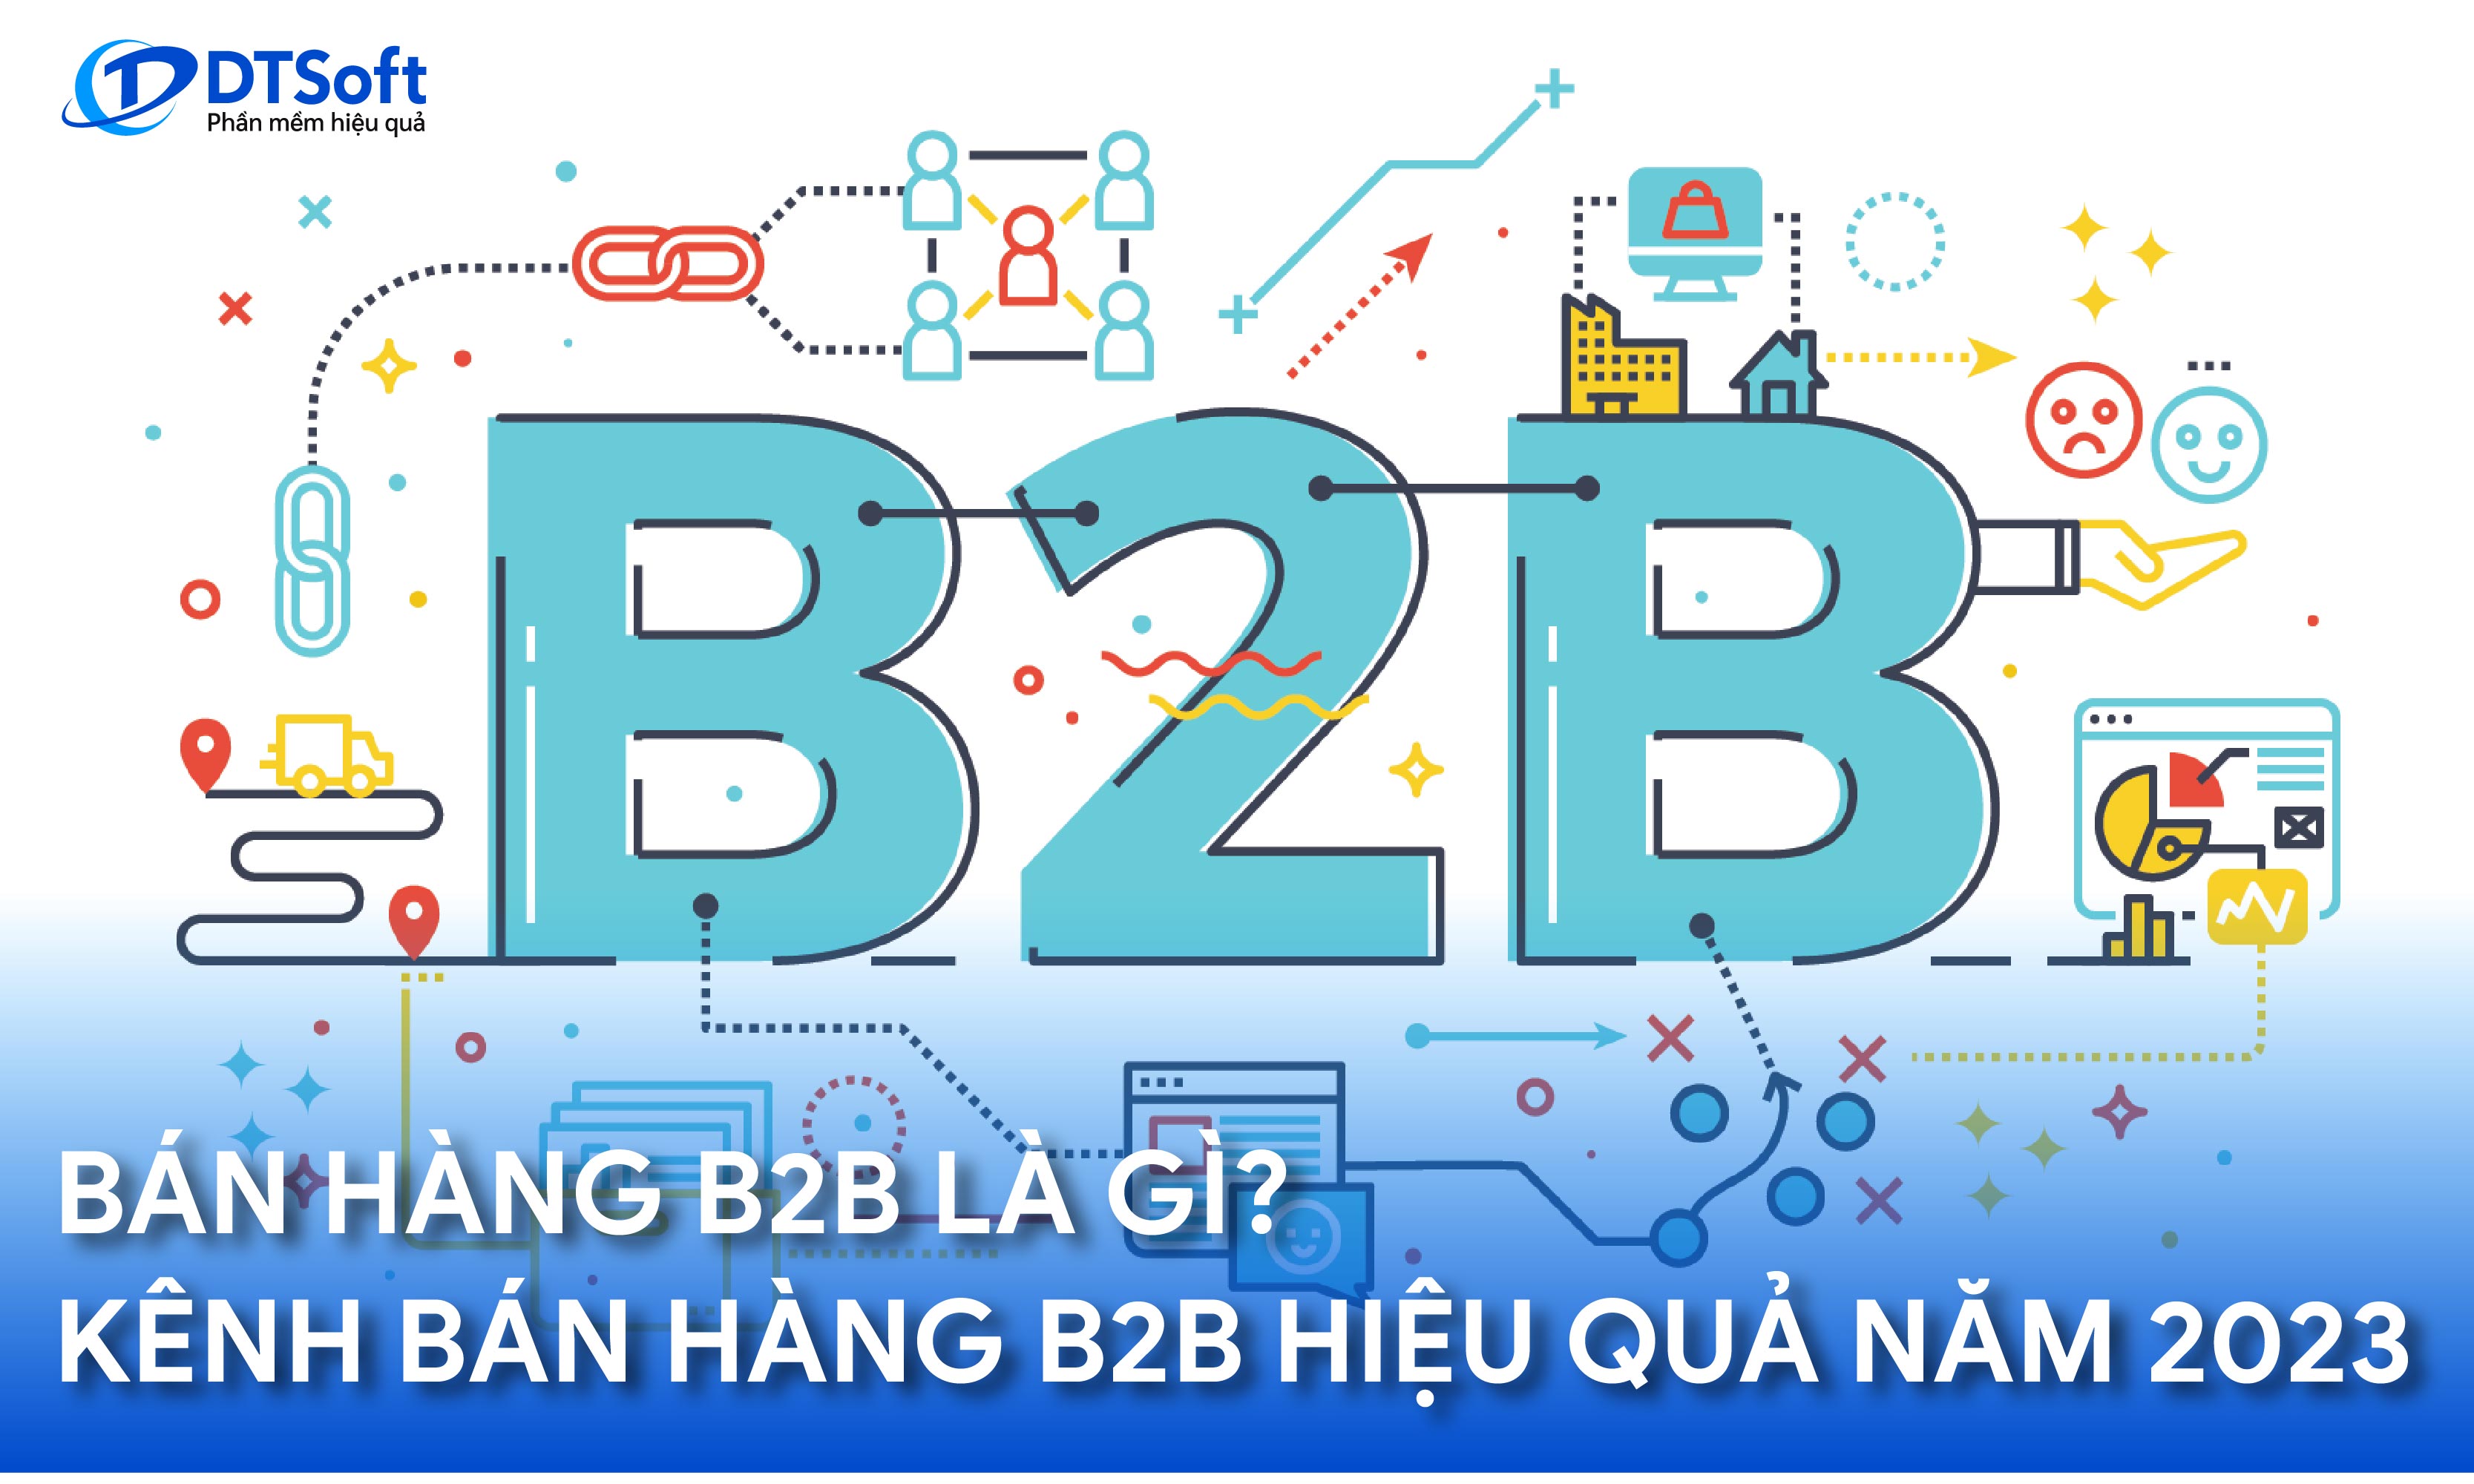 B2B là gì? Bán hàng B2B qua các kênh nào hiệu quả nhất hiện nay?